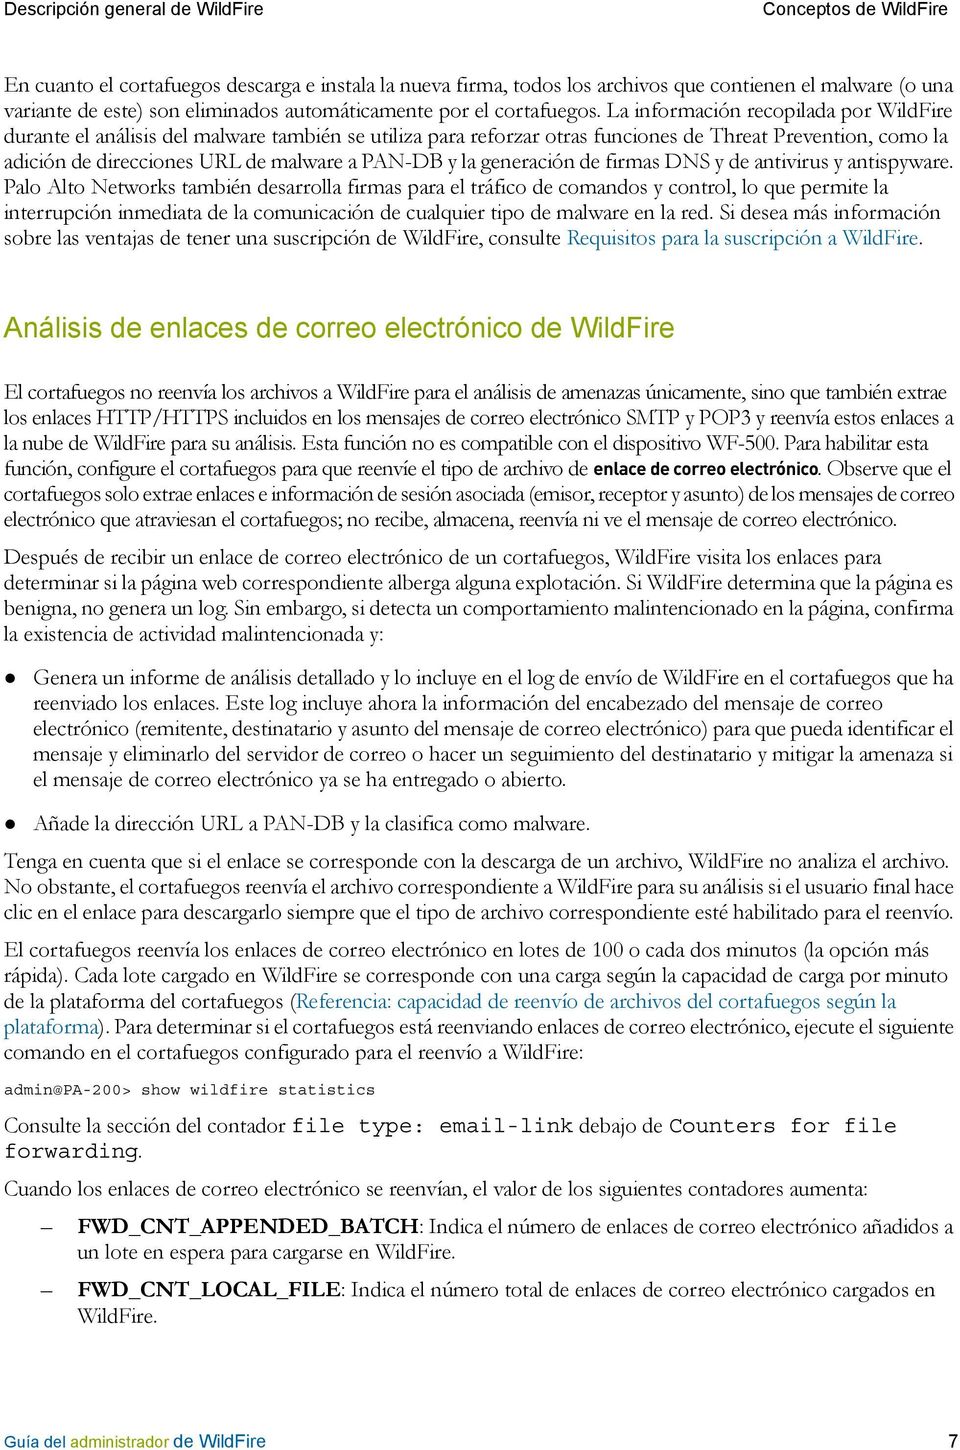 La información recopilada por WildFire durante el análisis del malware también se utiliza para reforzar otras funciones de Threat Prevention, como la adición de direcciones URL de malware a PAN-DB y